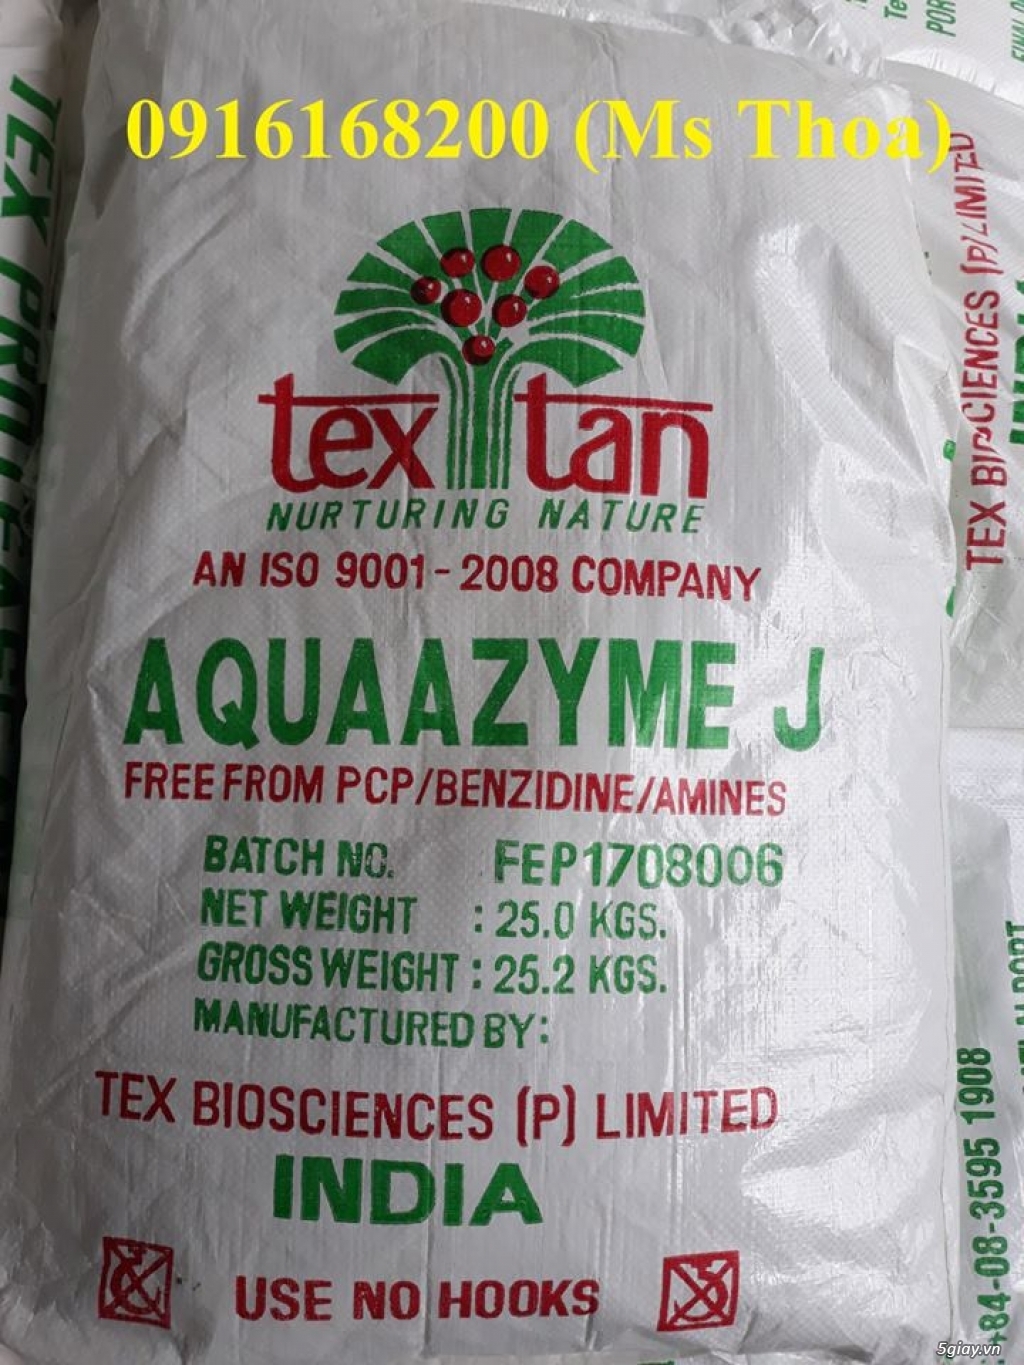 Aquaazyme J: Enzyme tăng trọng. Nguyên liệu nhập khẩu từ Ấn Độ